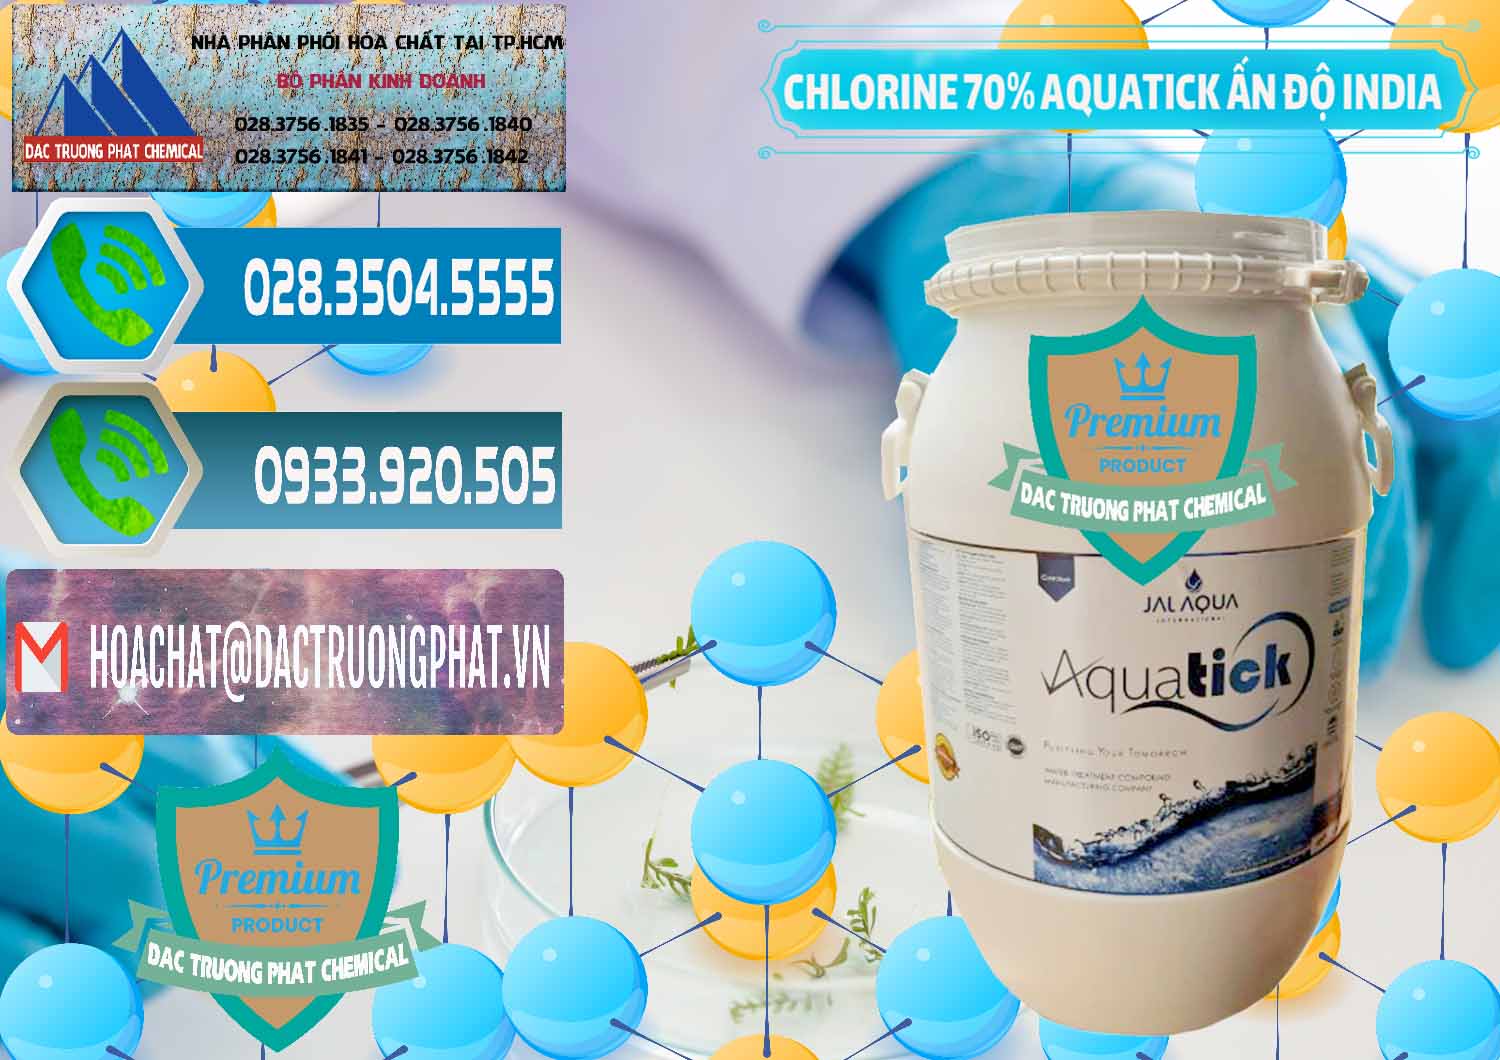 Cty cung cấp và bán Chlorine – Clorin 70% Aquatick Jal Aqua Ấn Độ India - 0215 - Nơi cung ứng - phân phối hóa chất tại TP.HCM - congtyhoachat.net